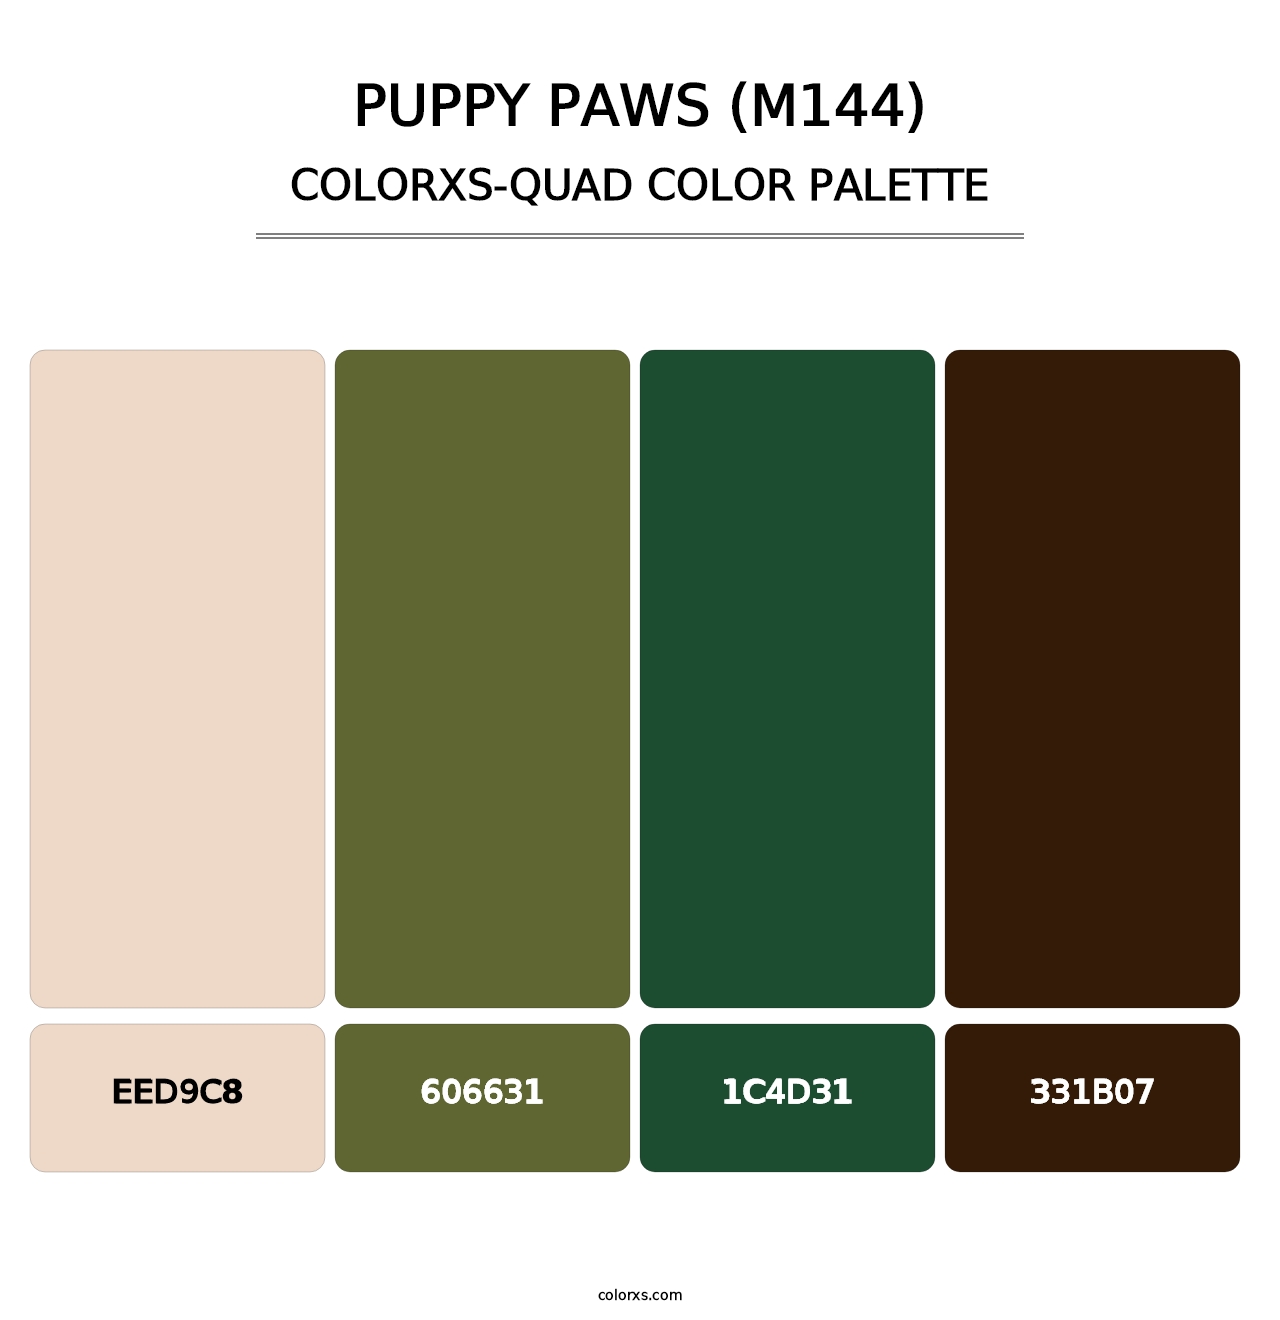 Puppy Paws (M144) - Colorxs Quad Palette